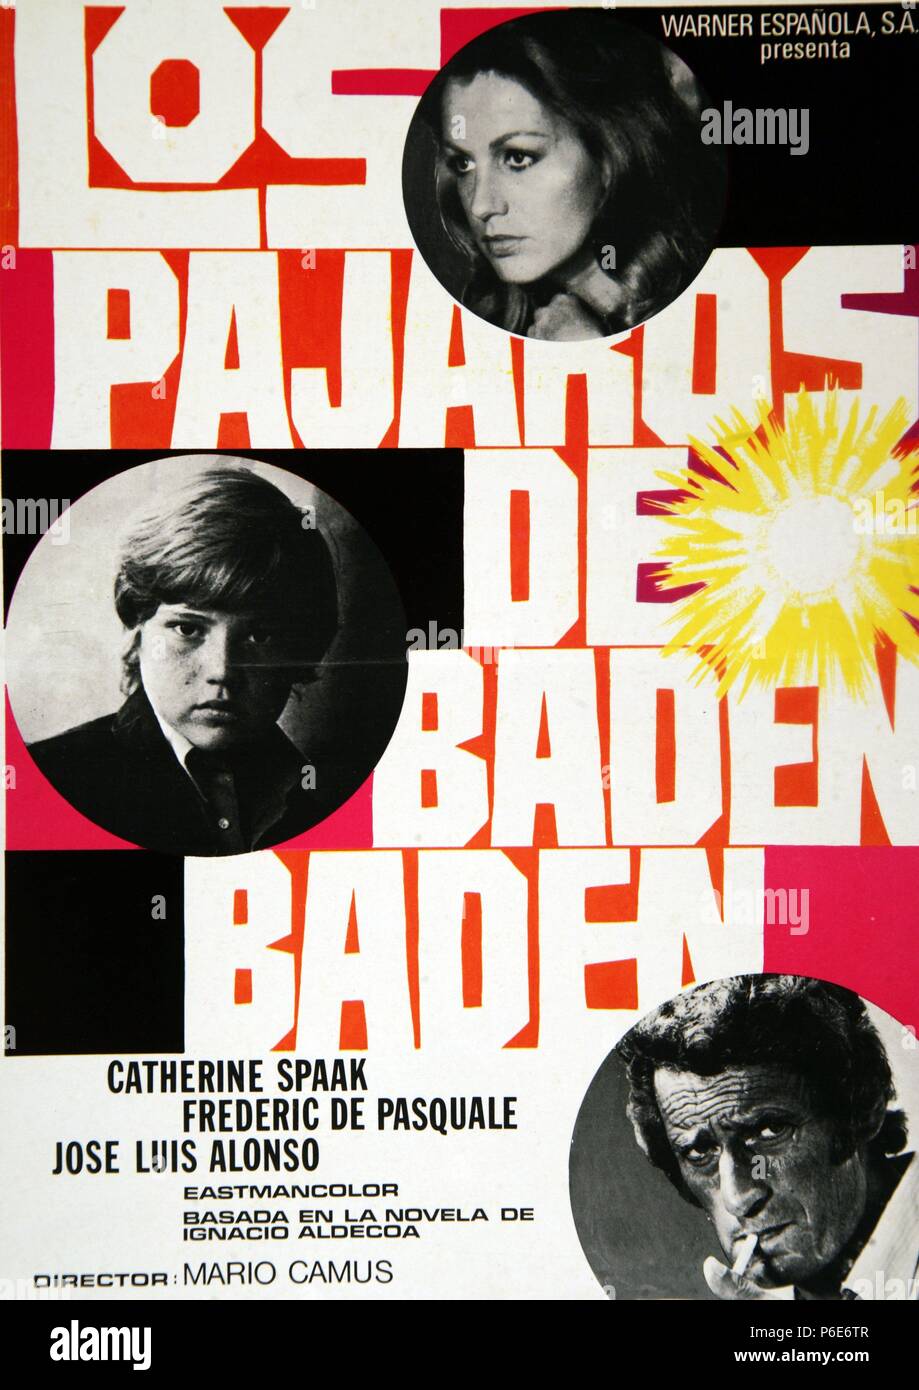 PELICULA : LOS PAJAROS DE Baden Baden , 1975. BASADA EN LA OBRA HOMONIMA DE IGNACIO ALDECOA. Direttore : MARIO CAMUS. ACTORES : Catherine Spaak, Jose Luis Alonso. Foto Stock